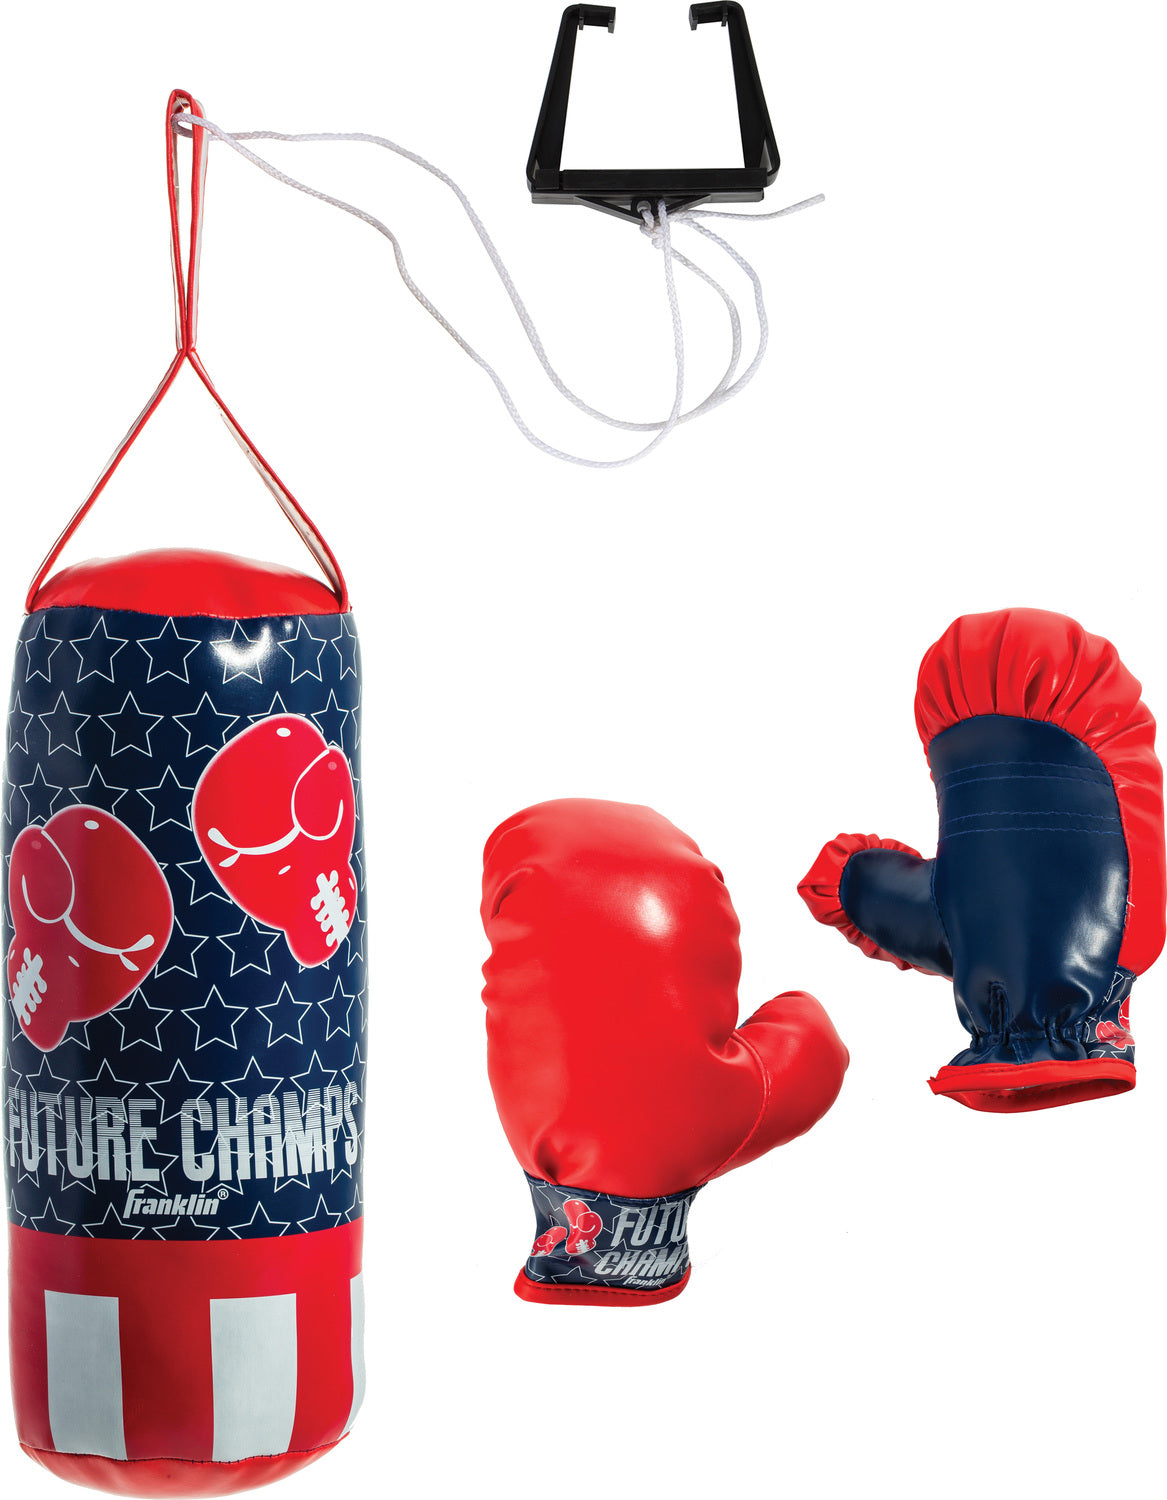 Future Champs Mini Boxing Set